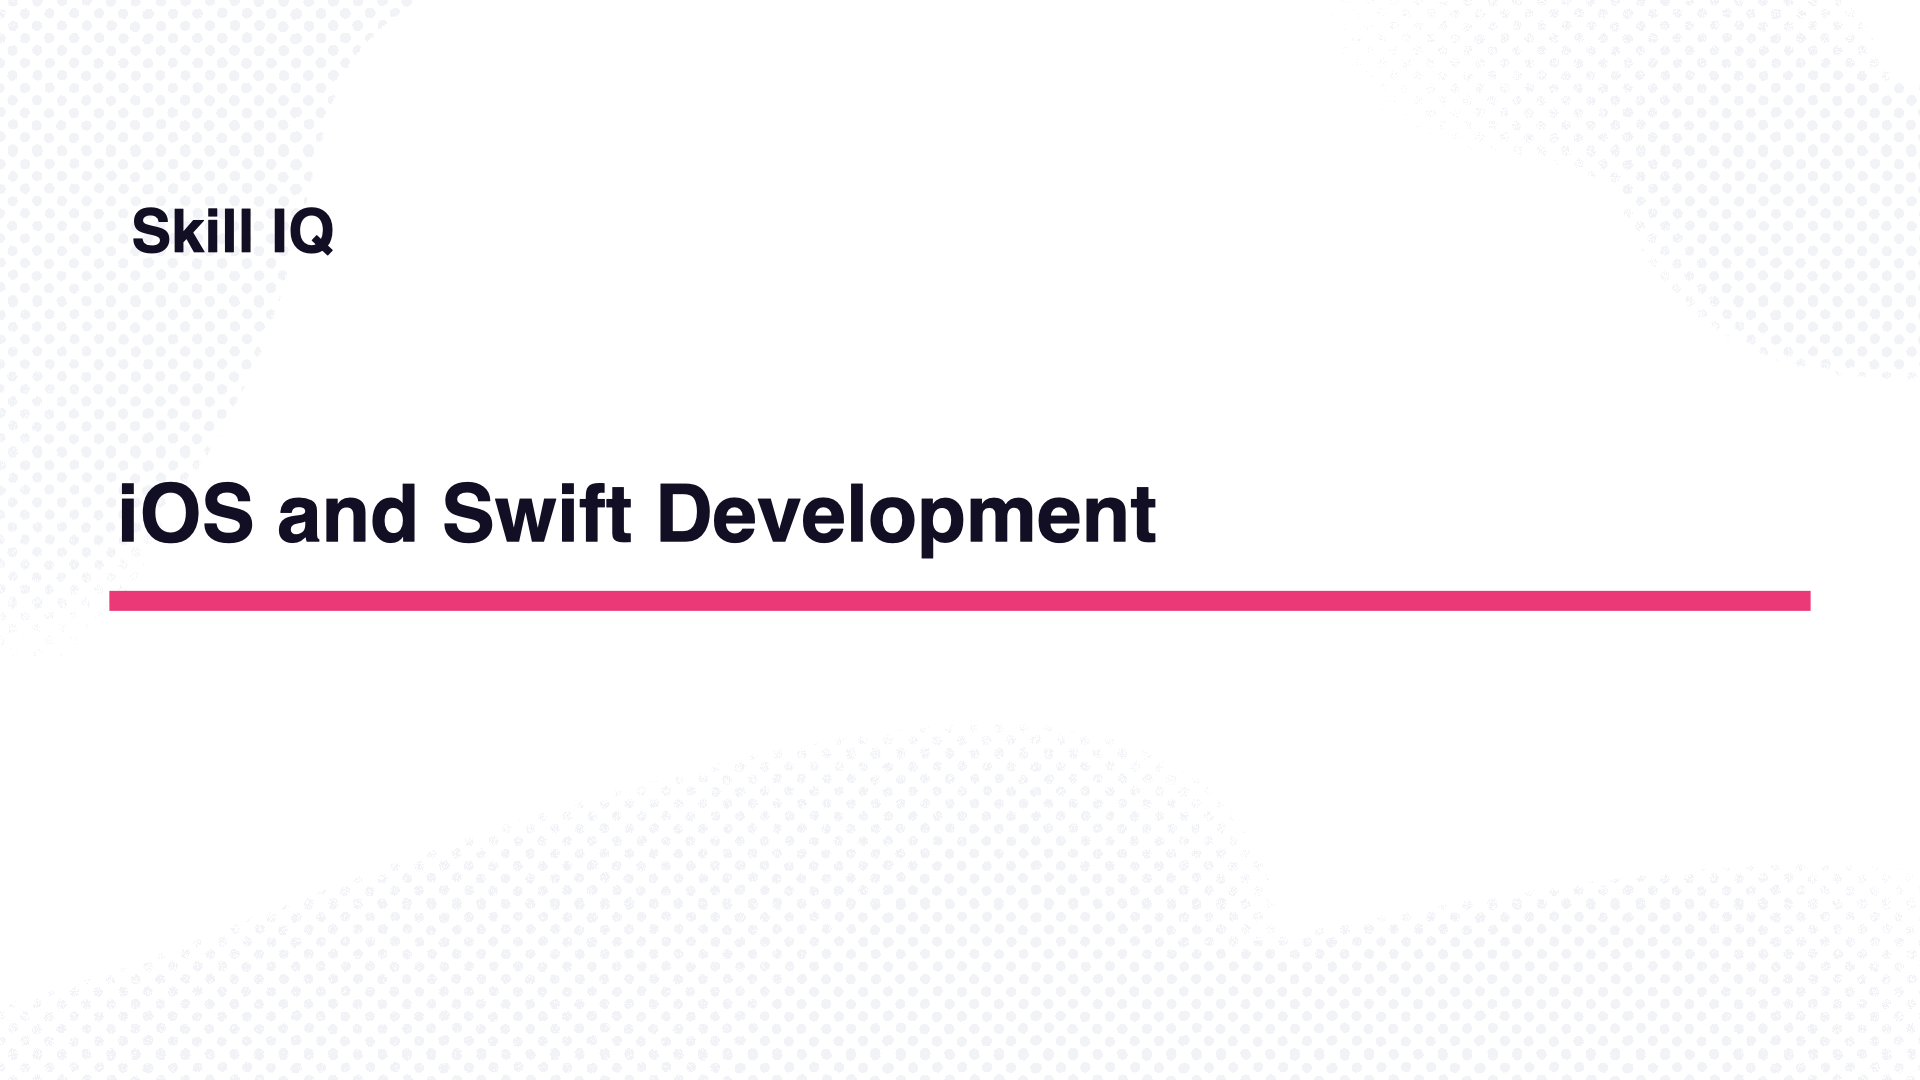 Skill IQ: iOS and Swift Development